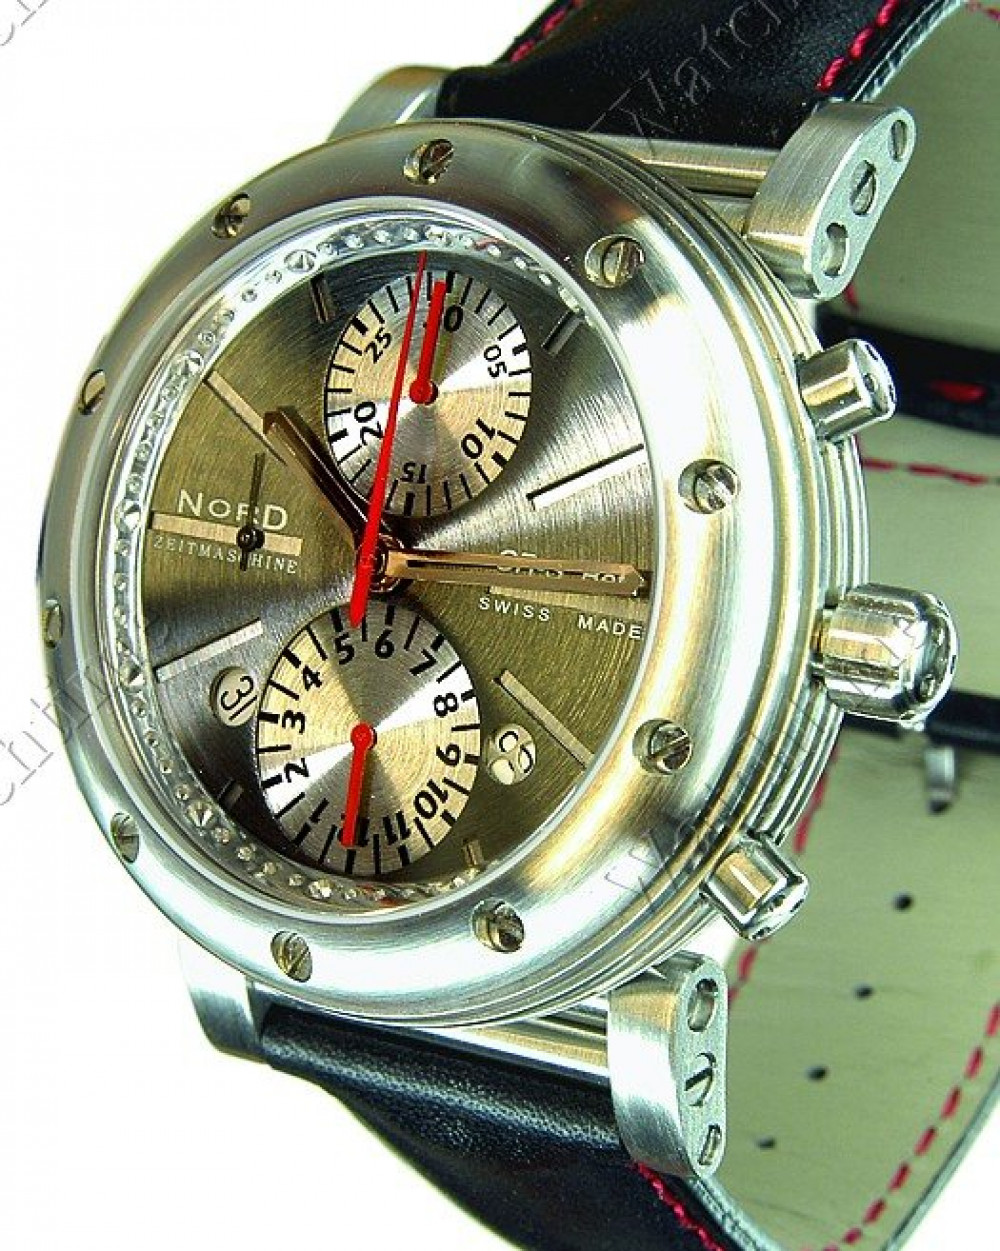 Zegarek firmy Nord Zeitmaschine, model CR-S Beta